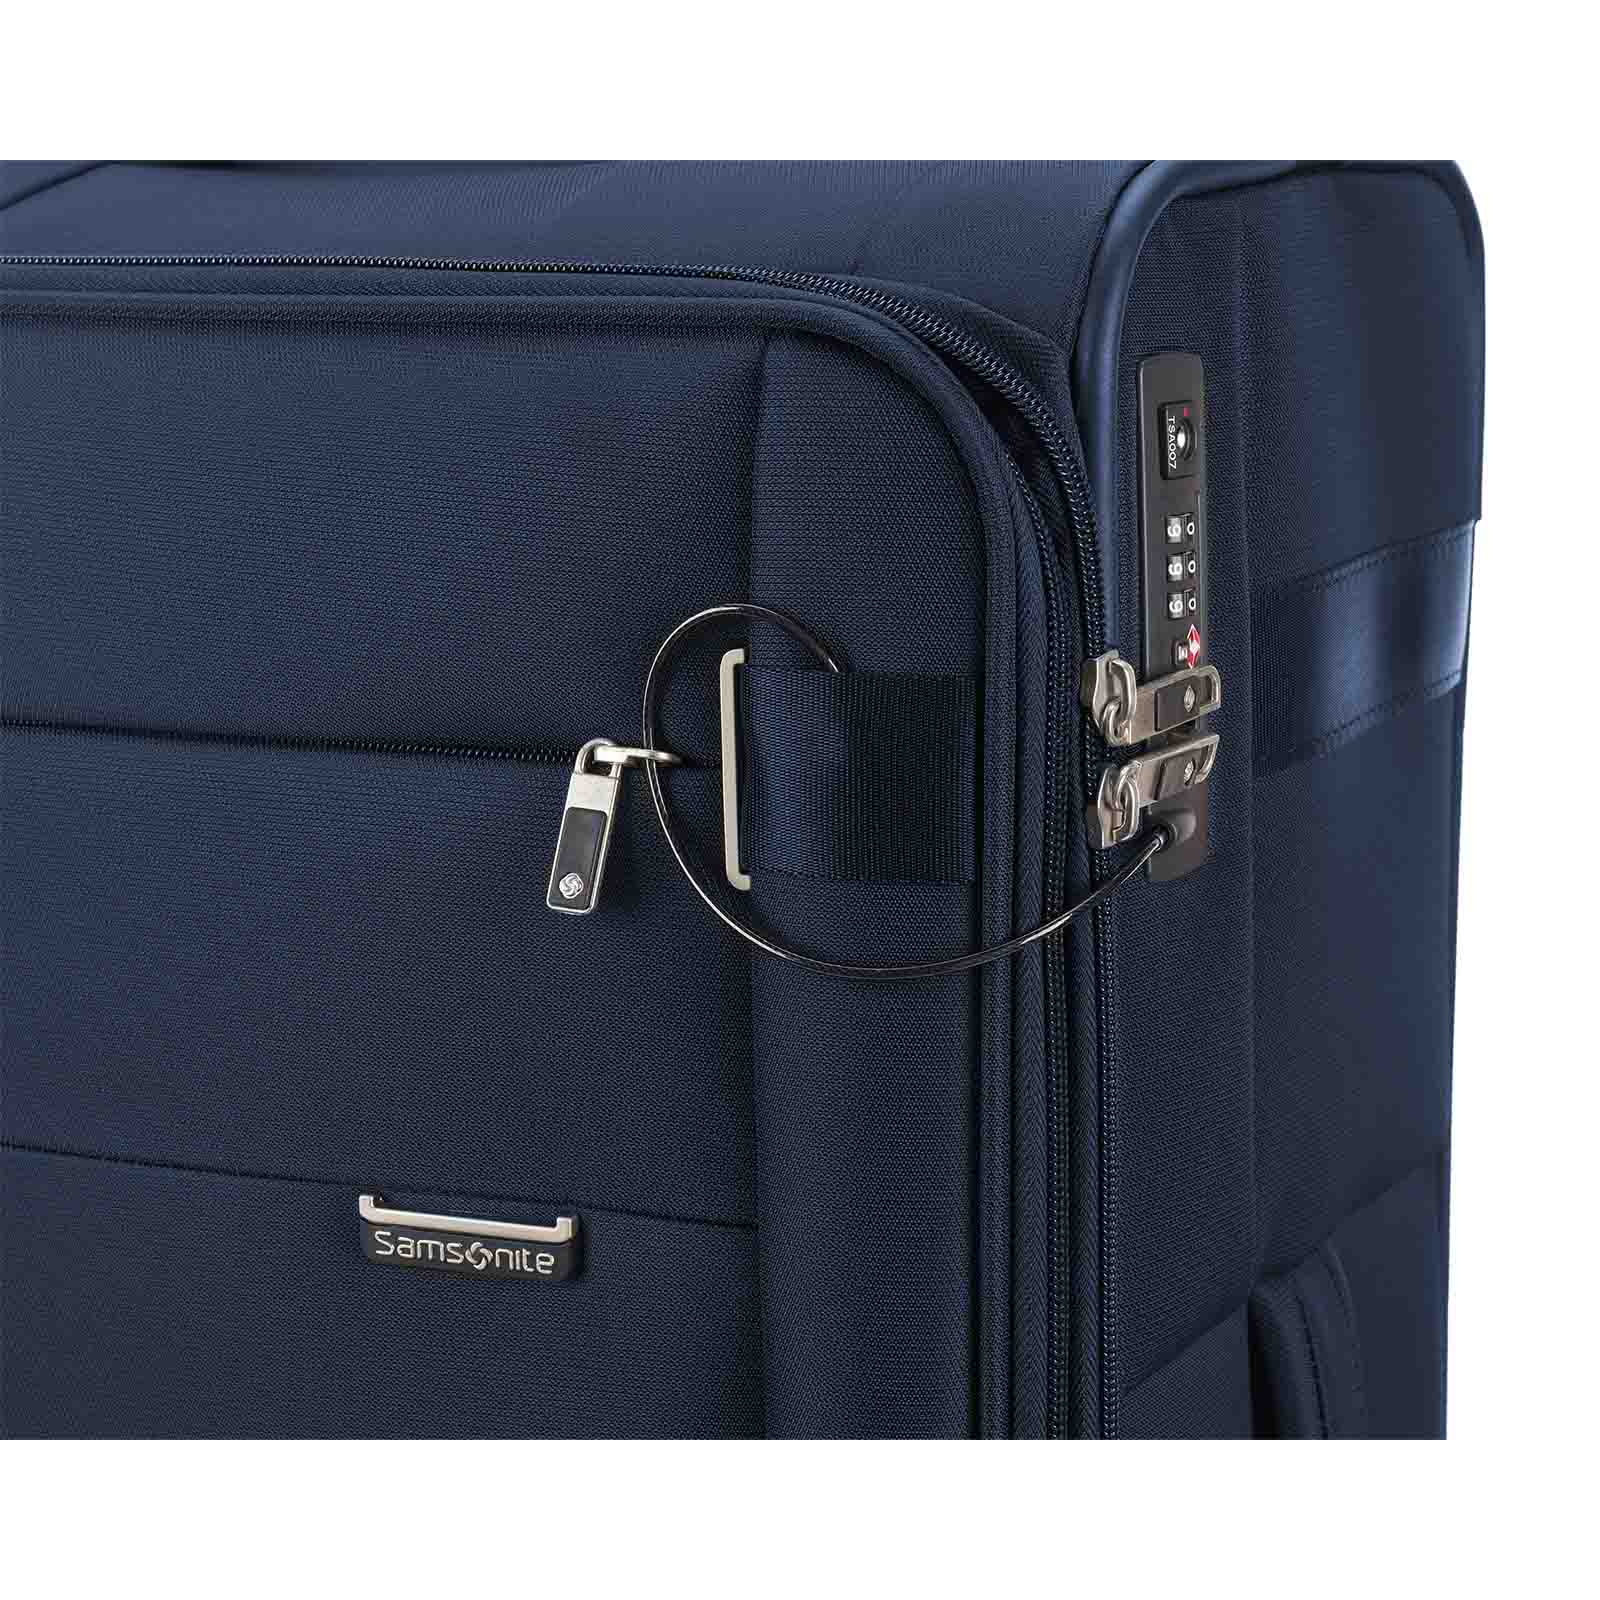 Samsonite-City-Rhythm-71cm-Suitcase-Navy-Logo